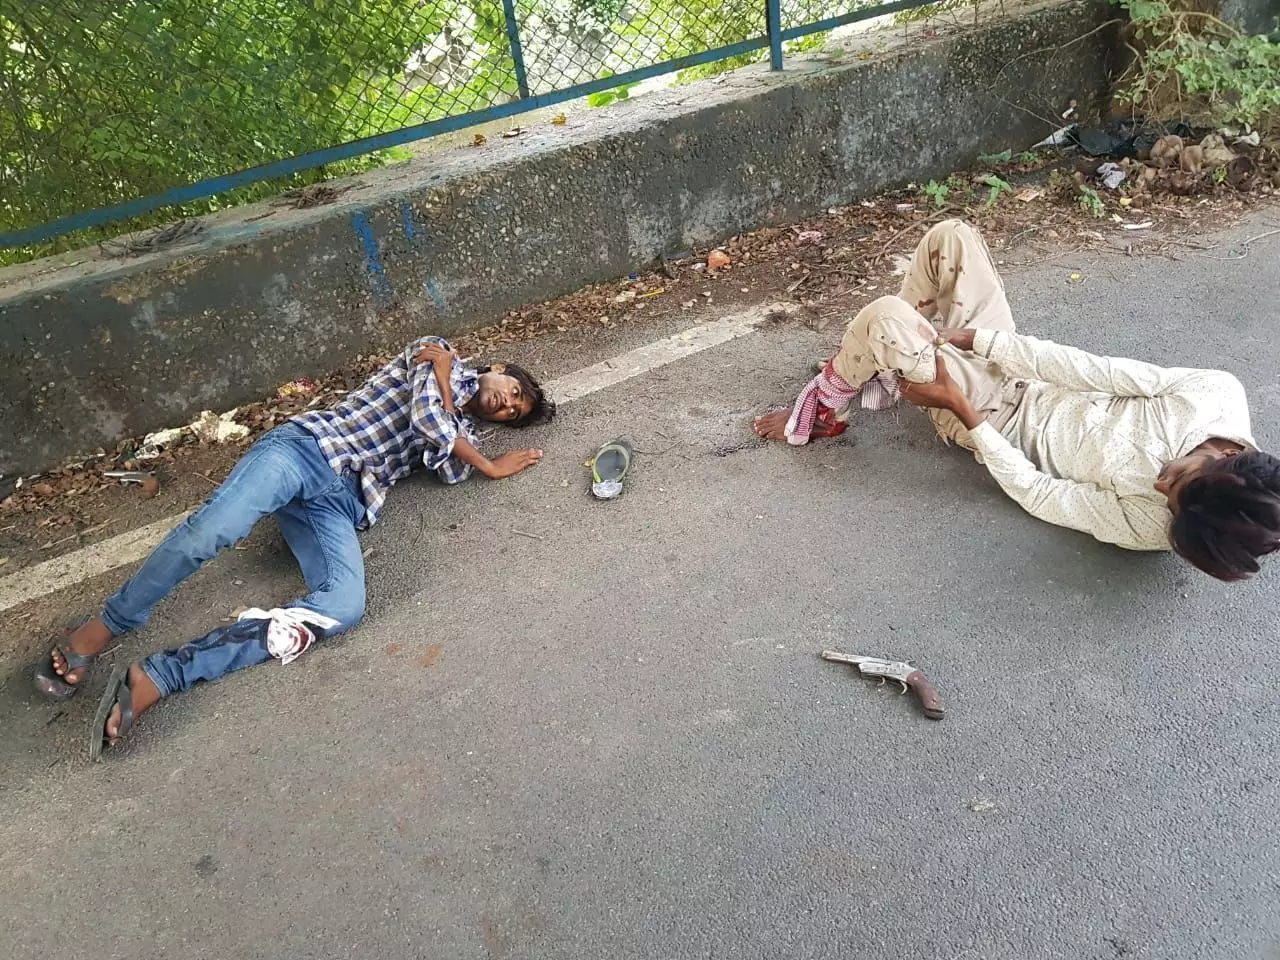 गाजियाबाद के थाना इंदिरापुरम में पुलिस की बदमाशों से मुठभेड़, दो बदमाशों के लगी गोली सिपाही भी हुआ घायल